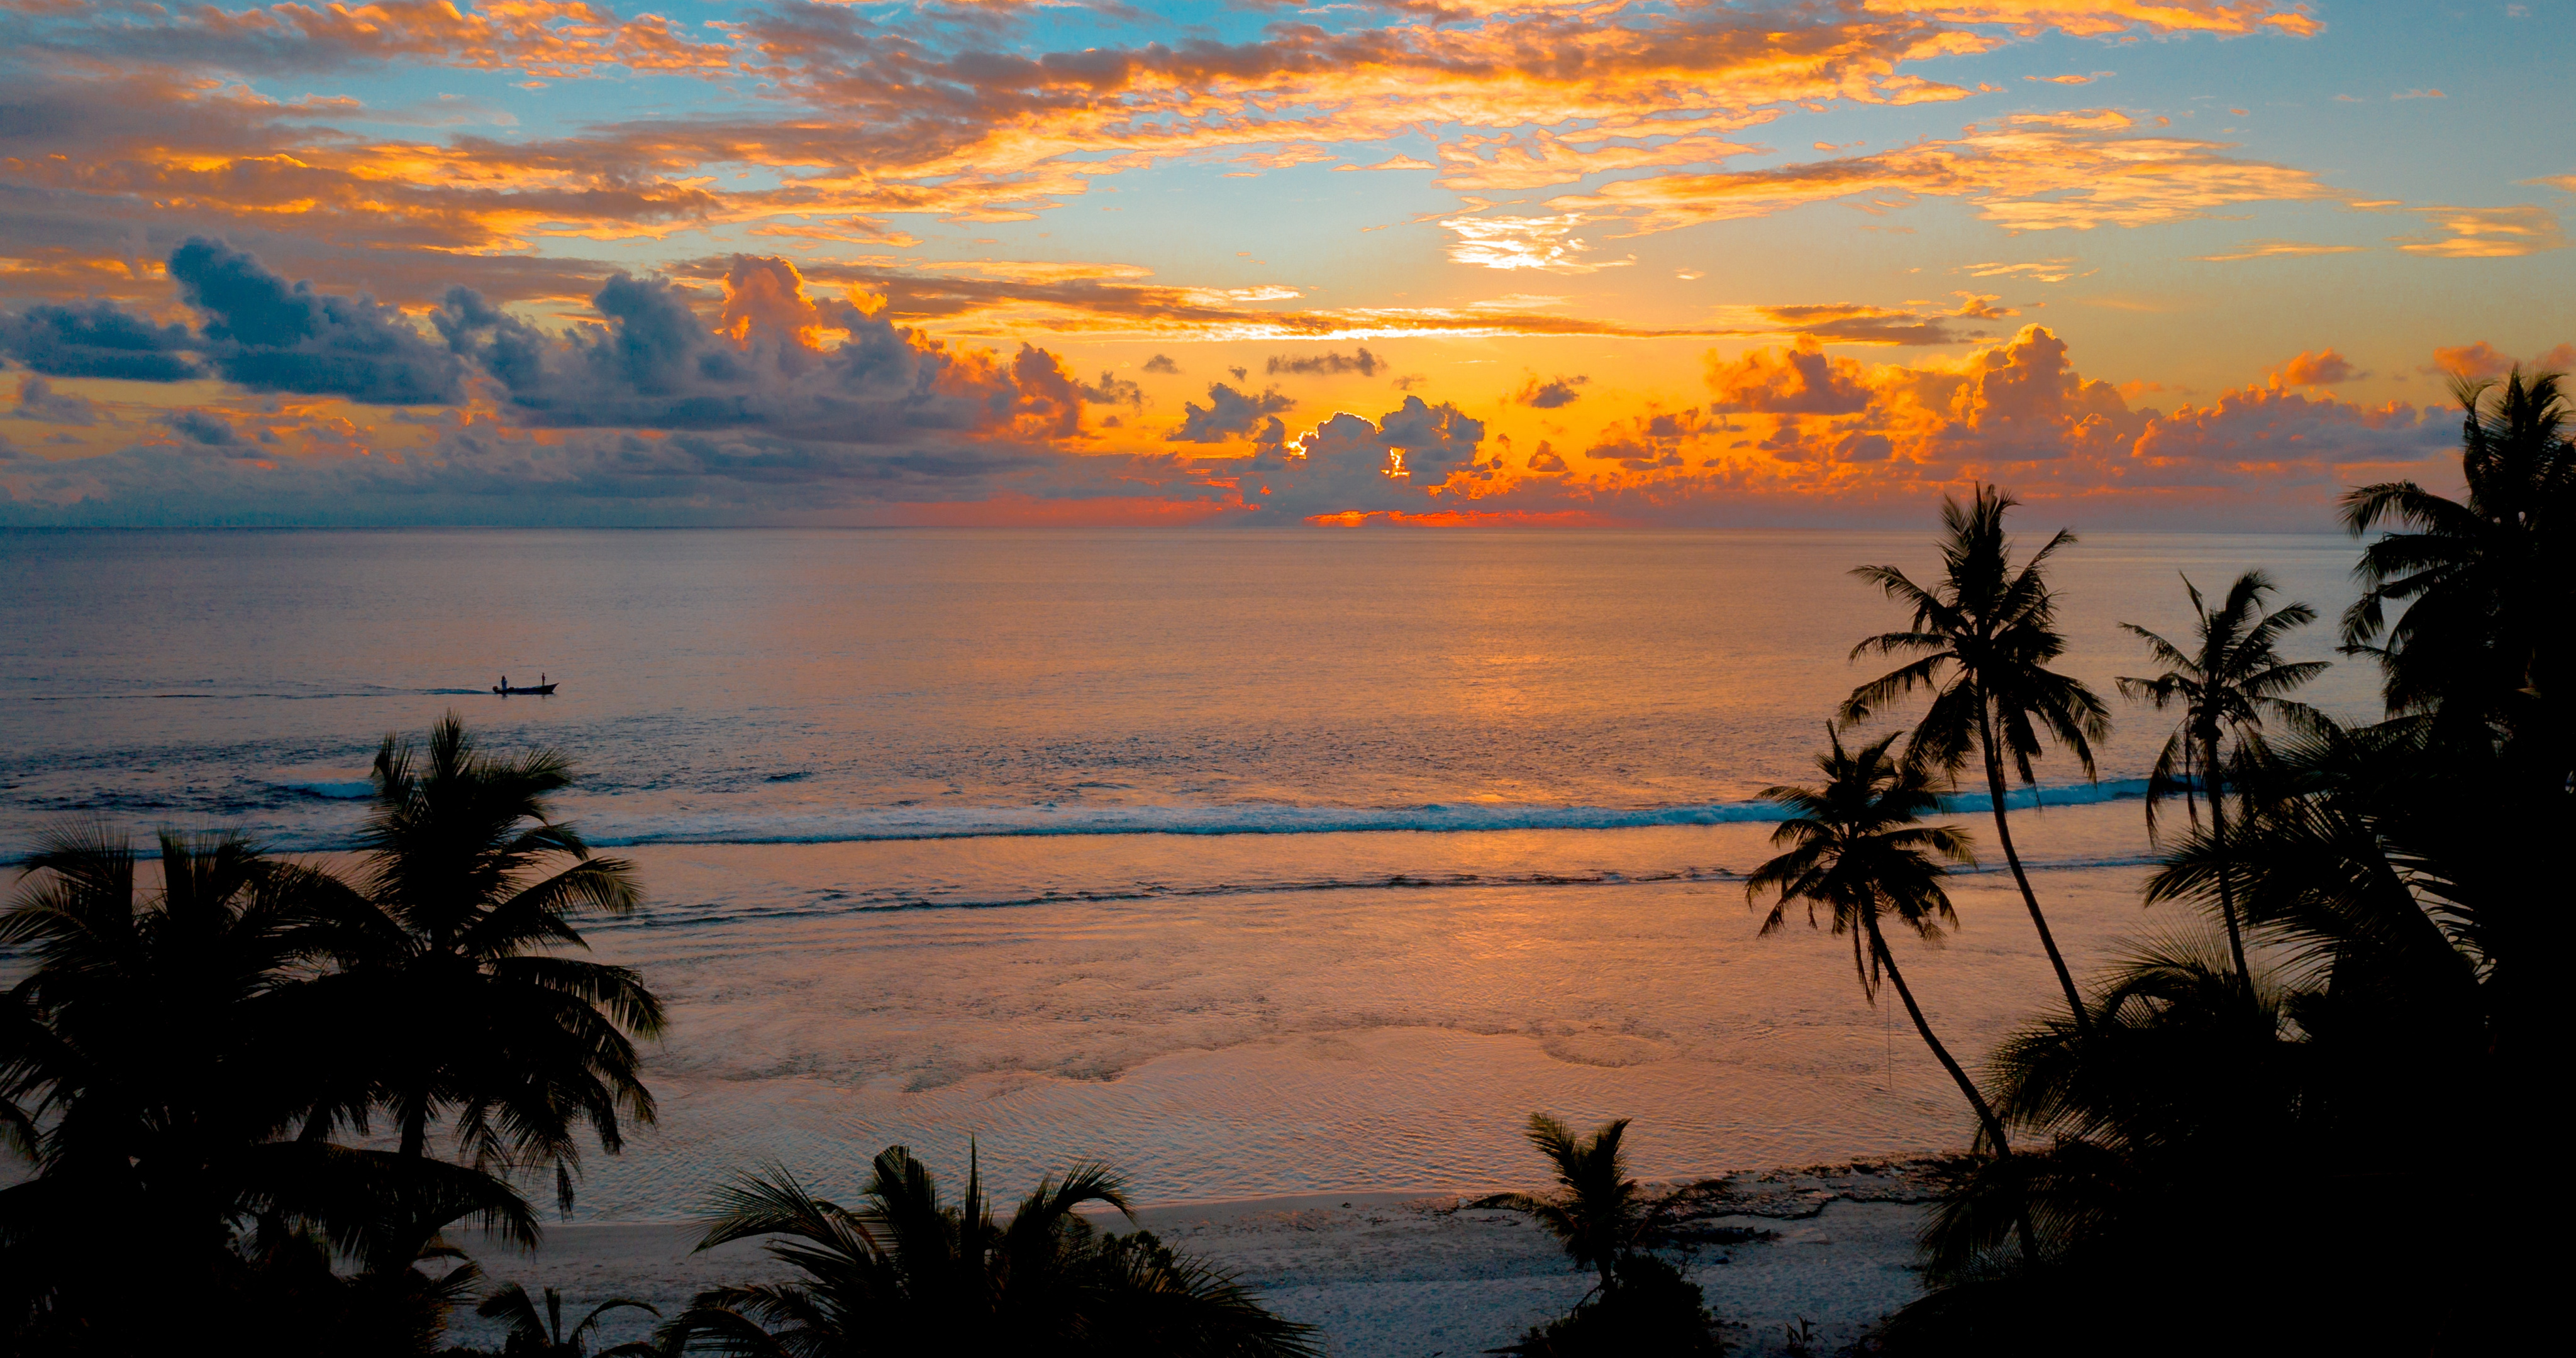 Обои на рабочий стол тропический, песок, кокосовые пальмы, сумерки, тихо, океан, закат, The Maldives, отдых, пальмы, небо, идиллический, мирный, природа, Восход смотреть, пляж, спокойный, побережье, море, силуэт, рассвет, тропики, отпуск, пейзаж, Paradise, облака